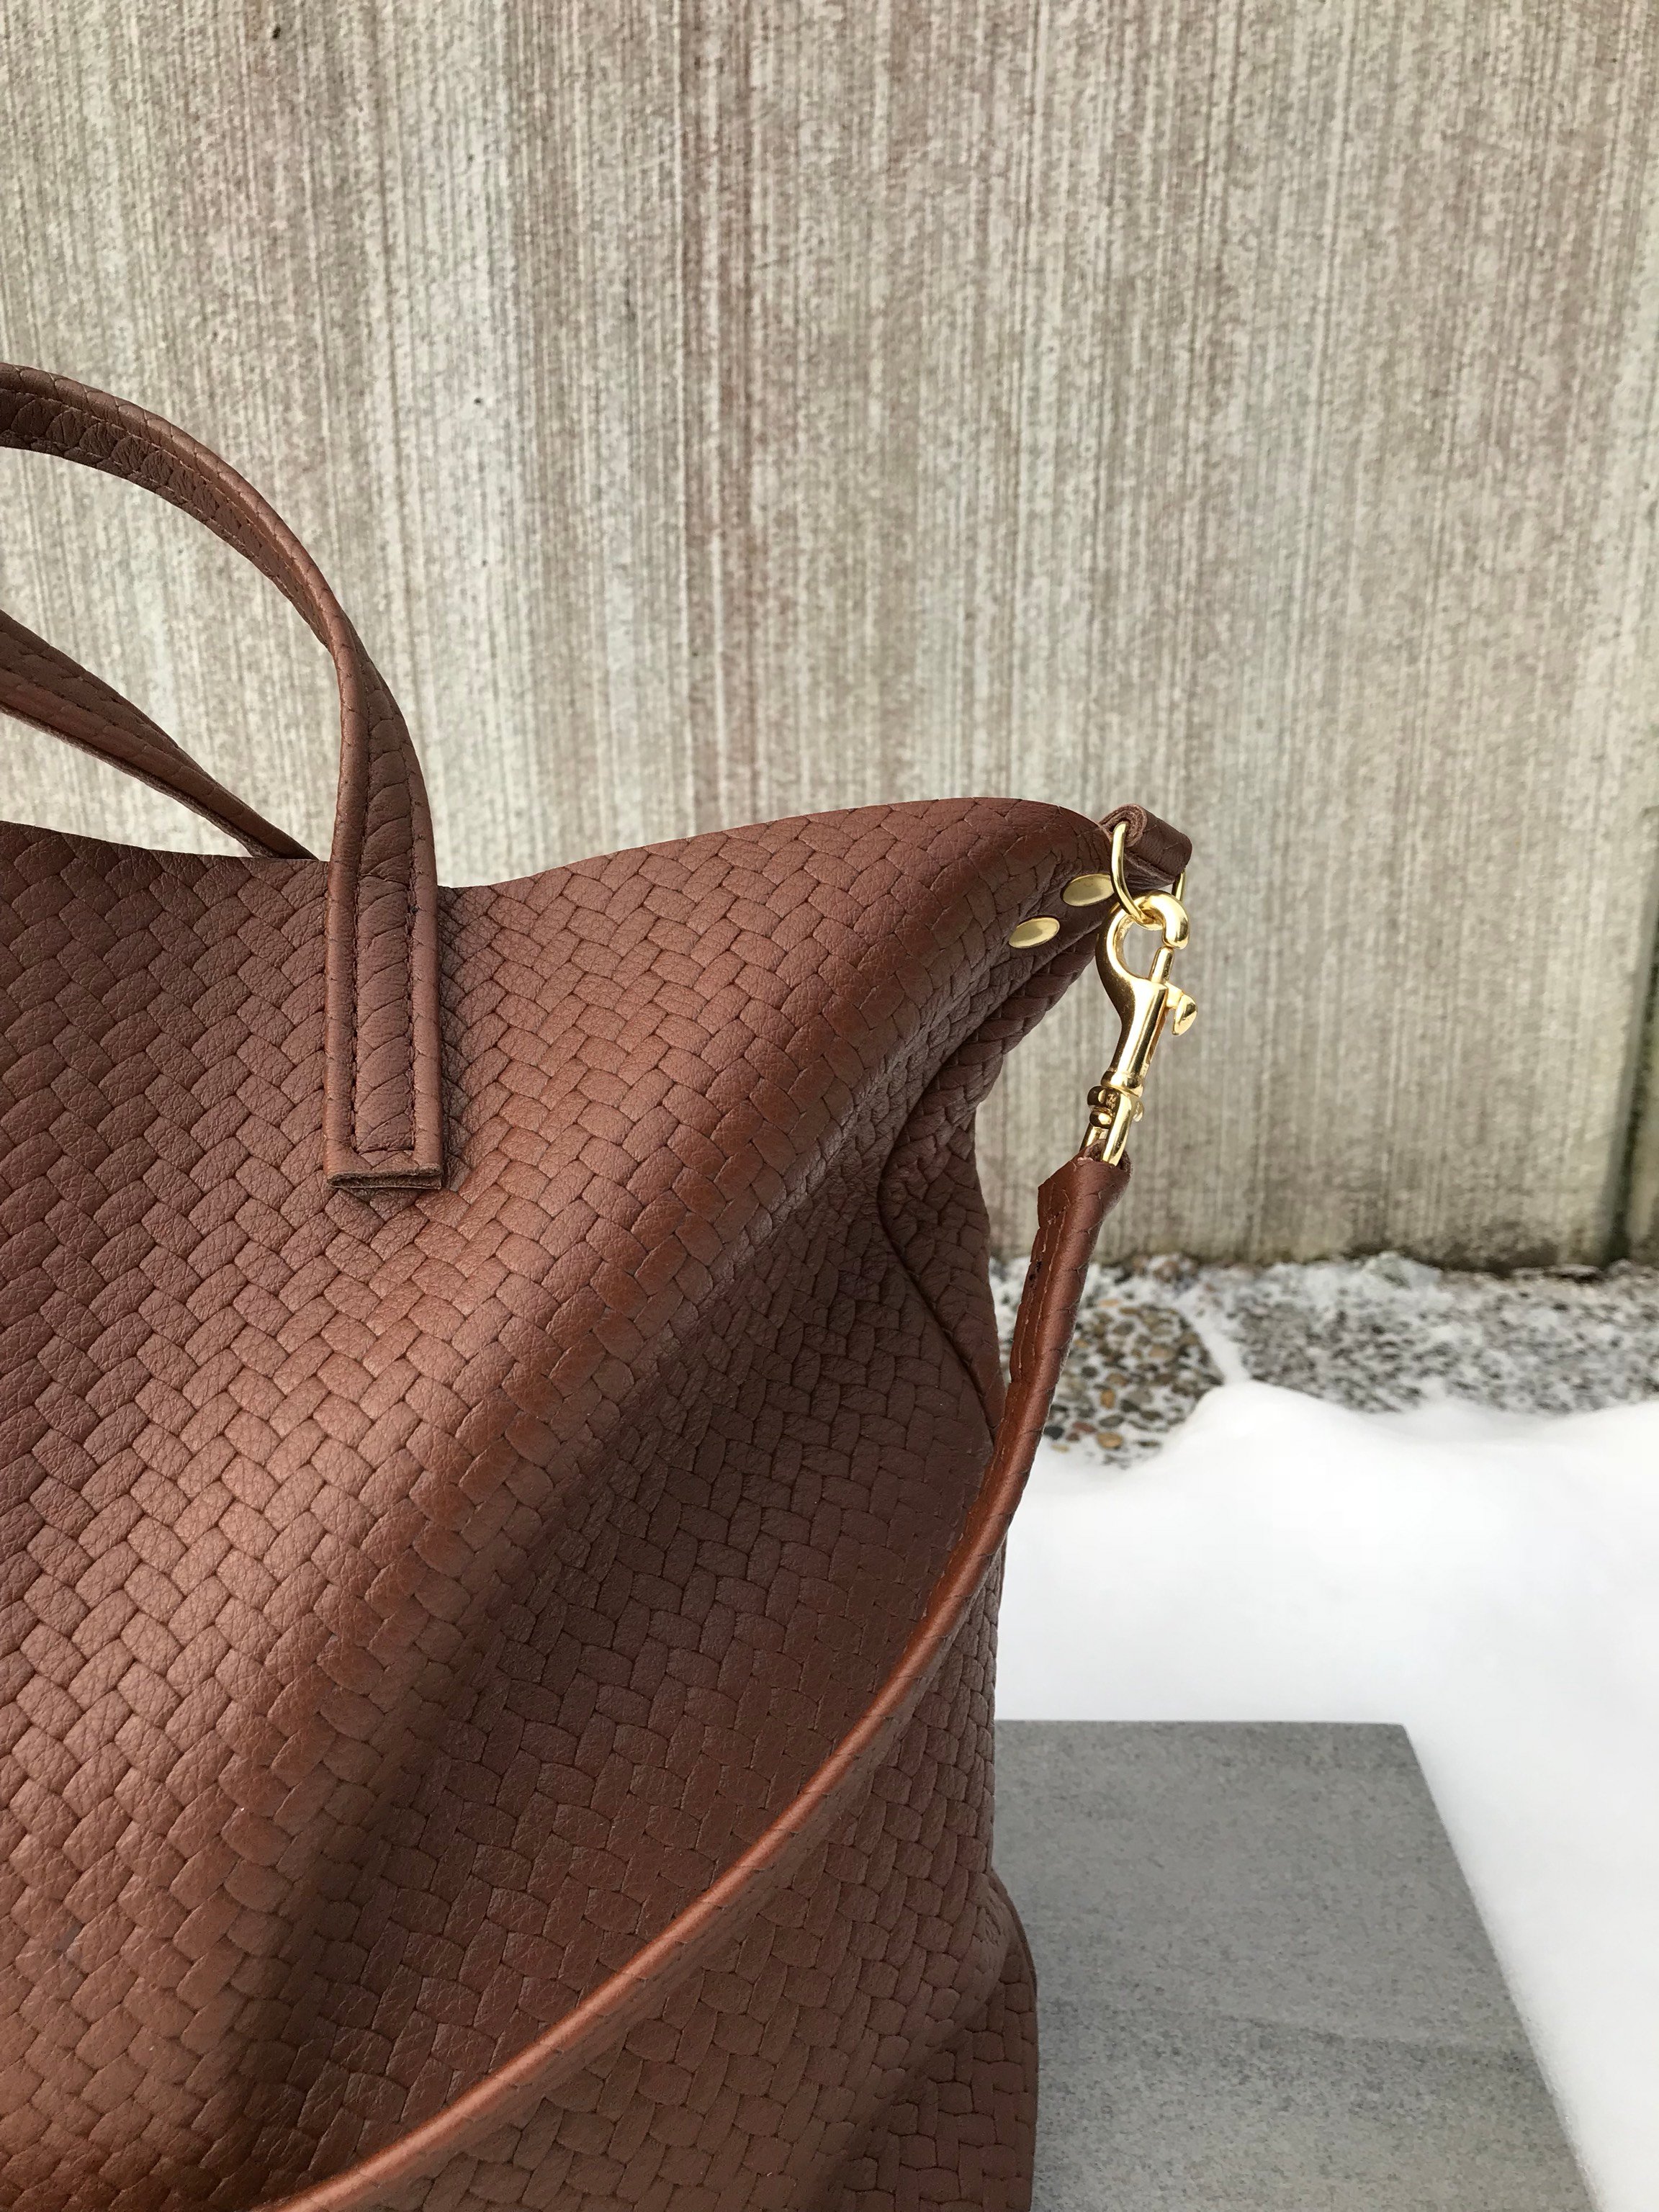 New Tote Bag - Herringbone Leather